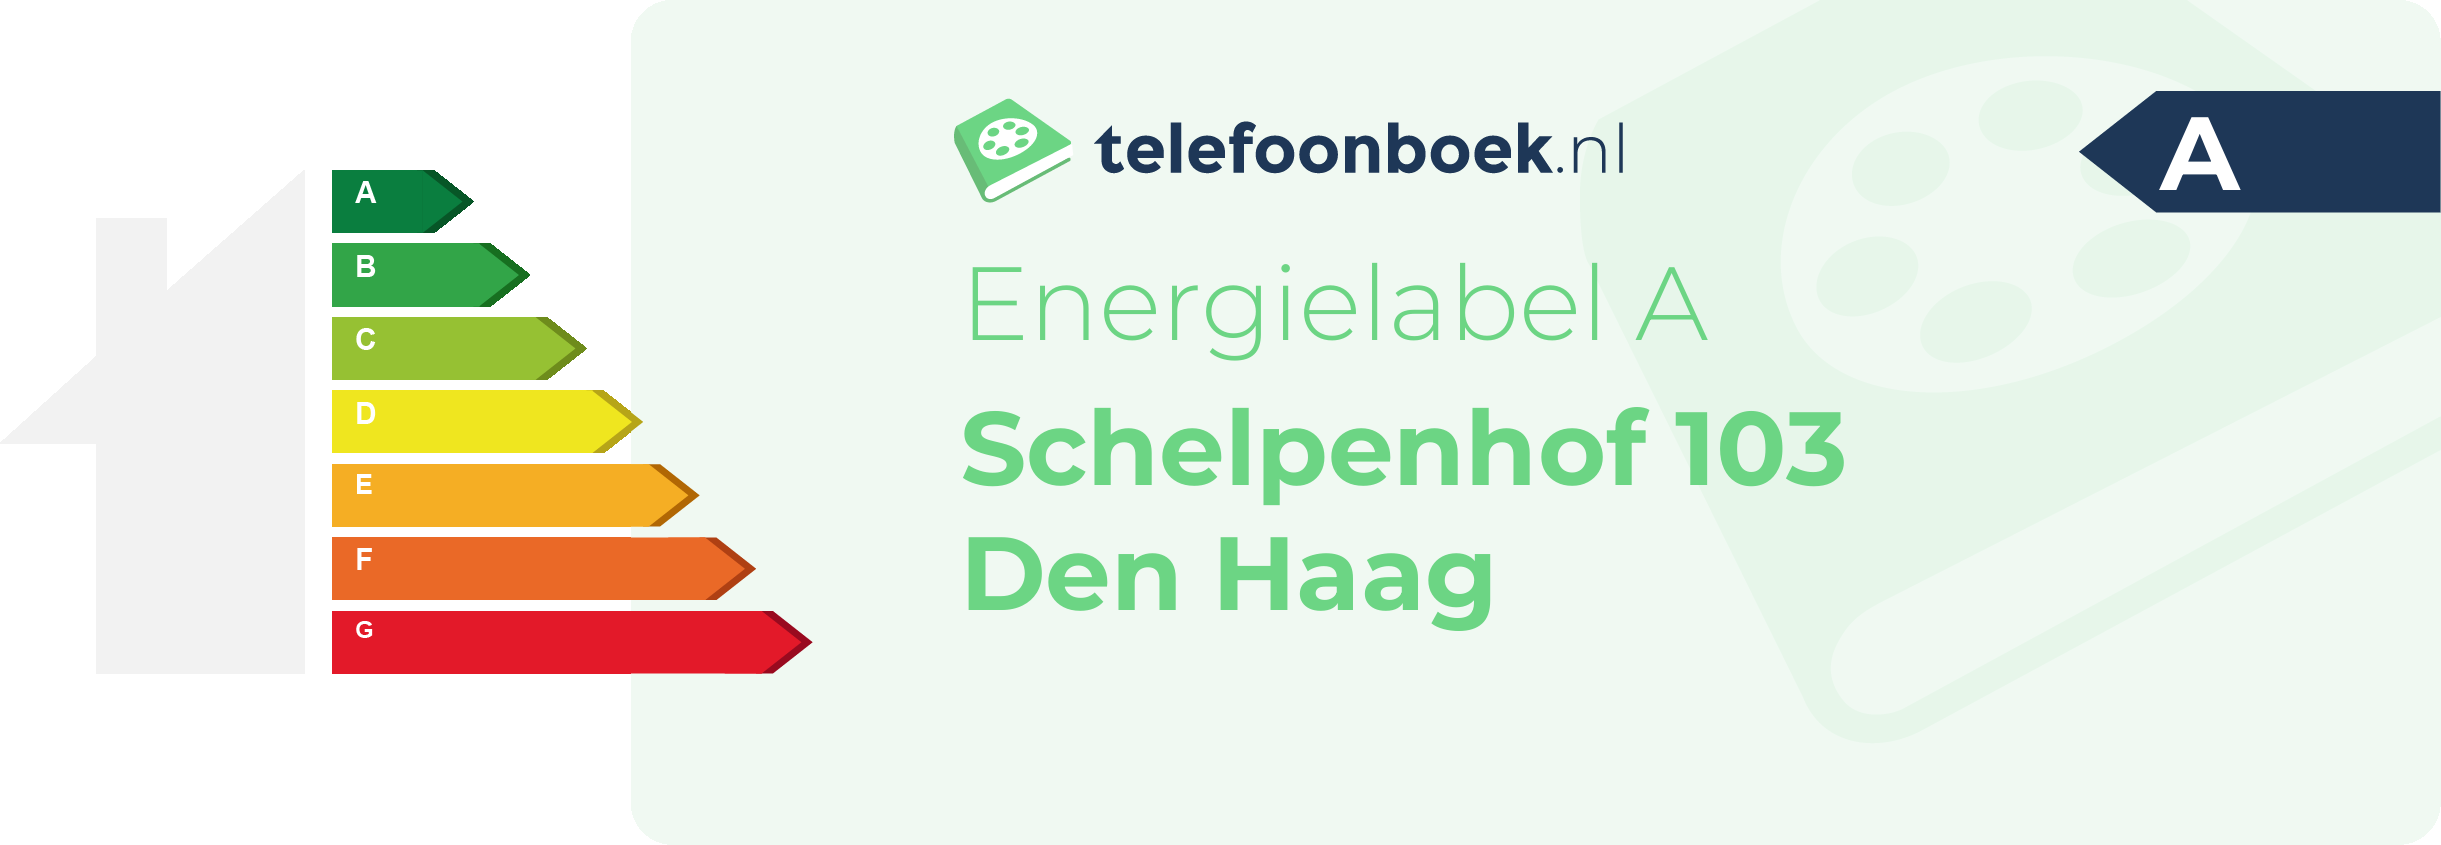 Energielabel Schelpenhof 103 Den Haag